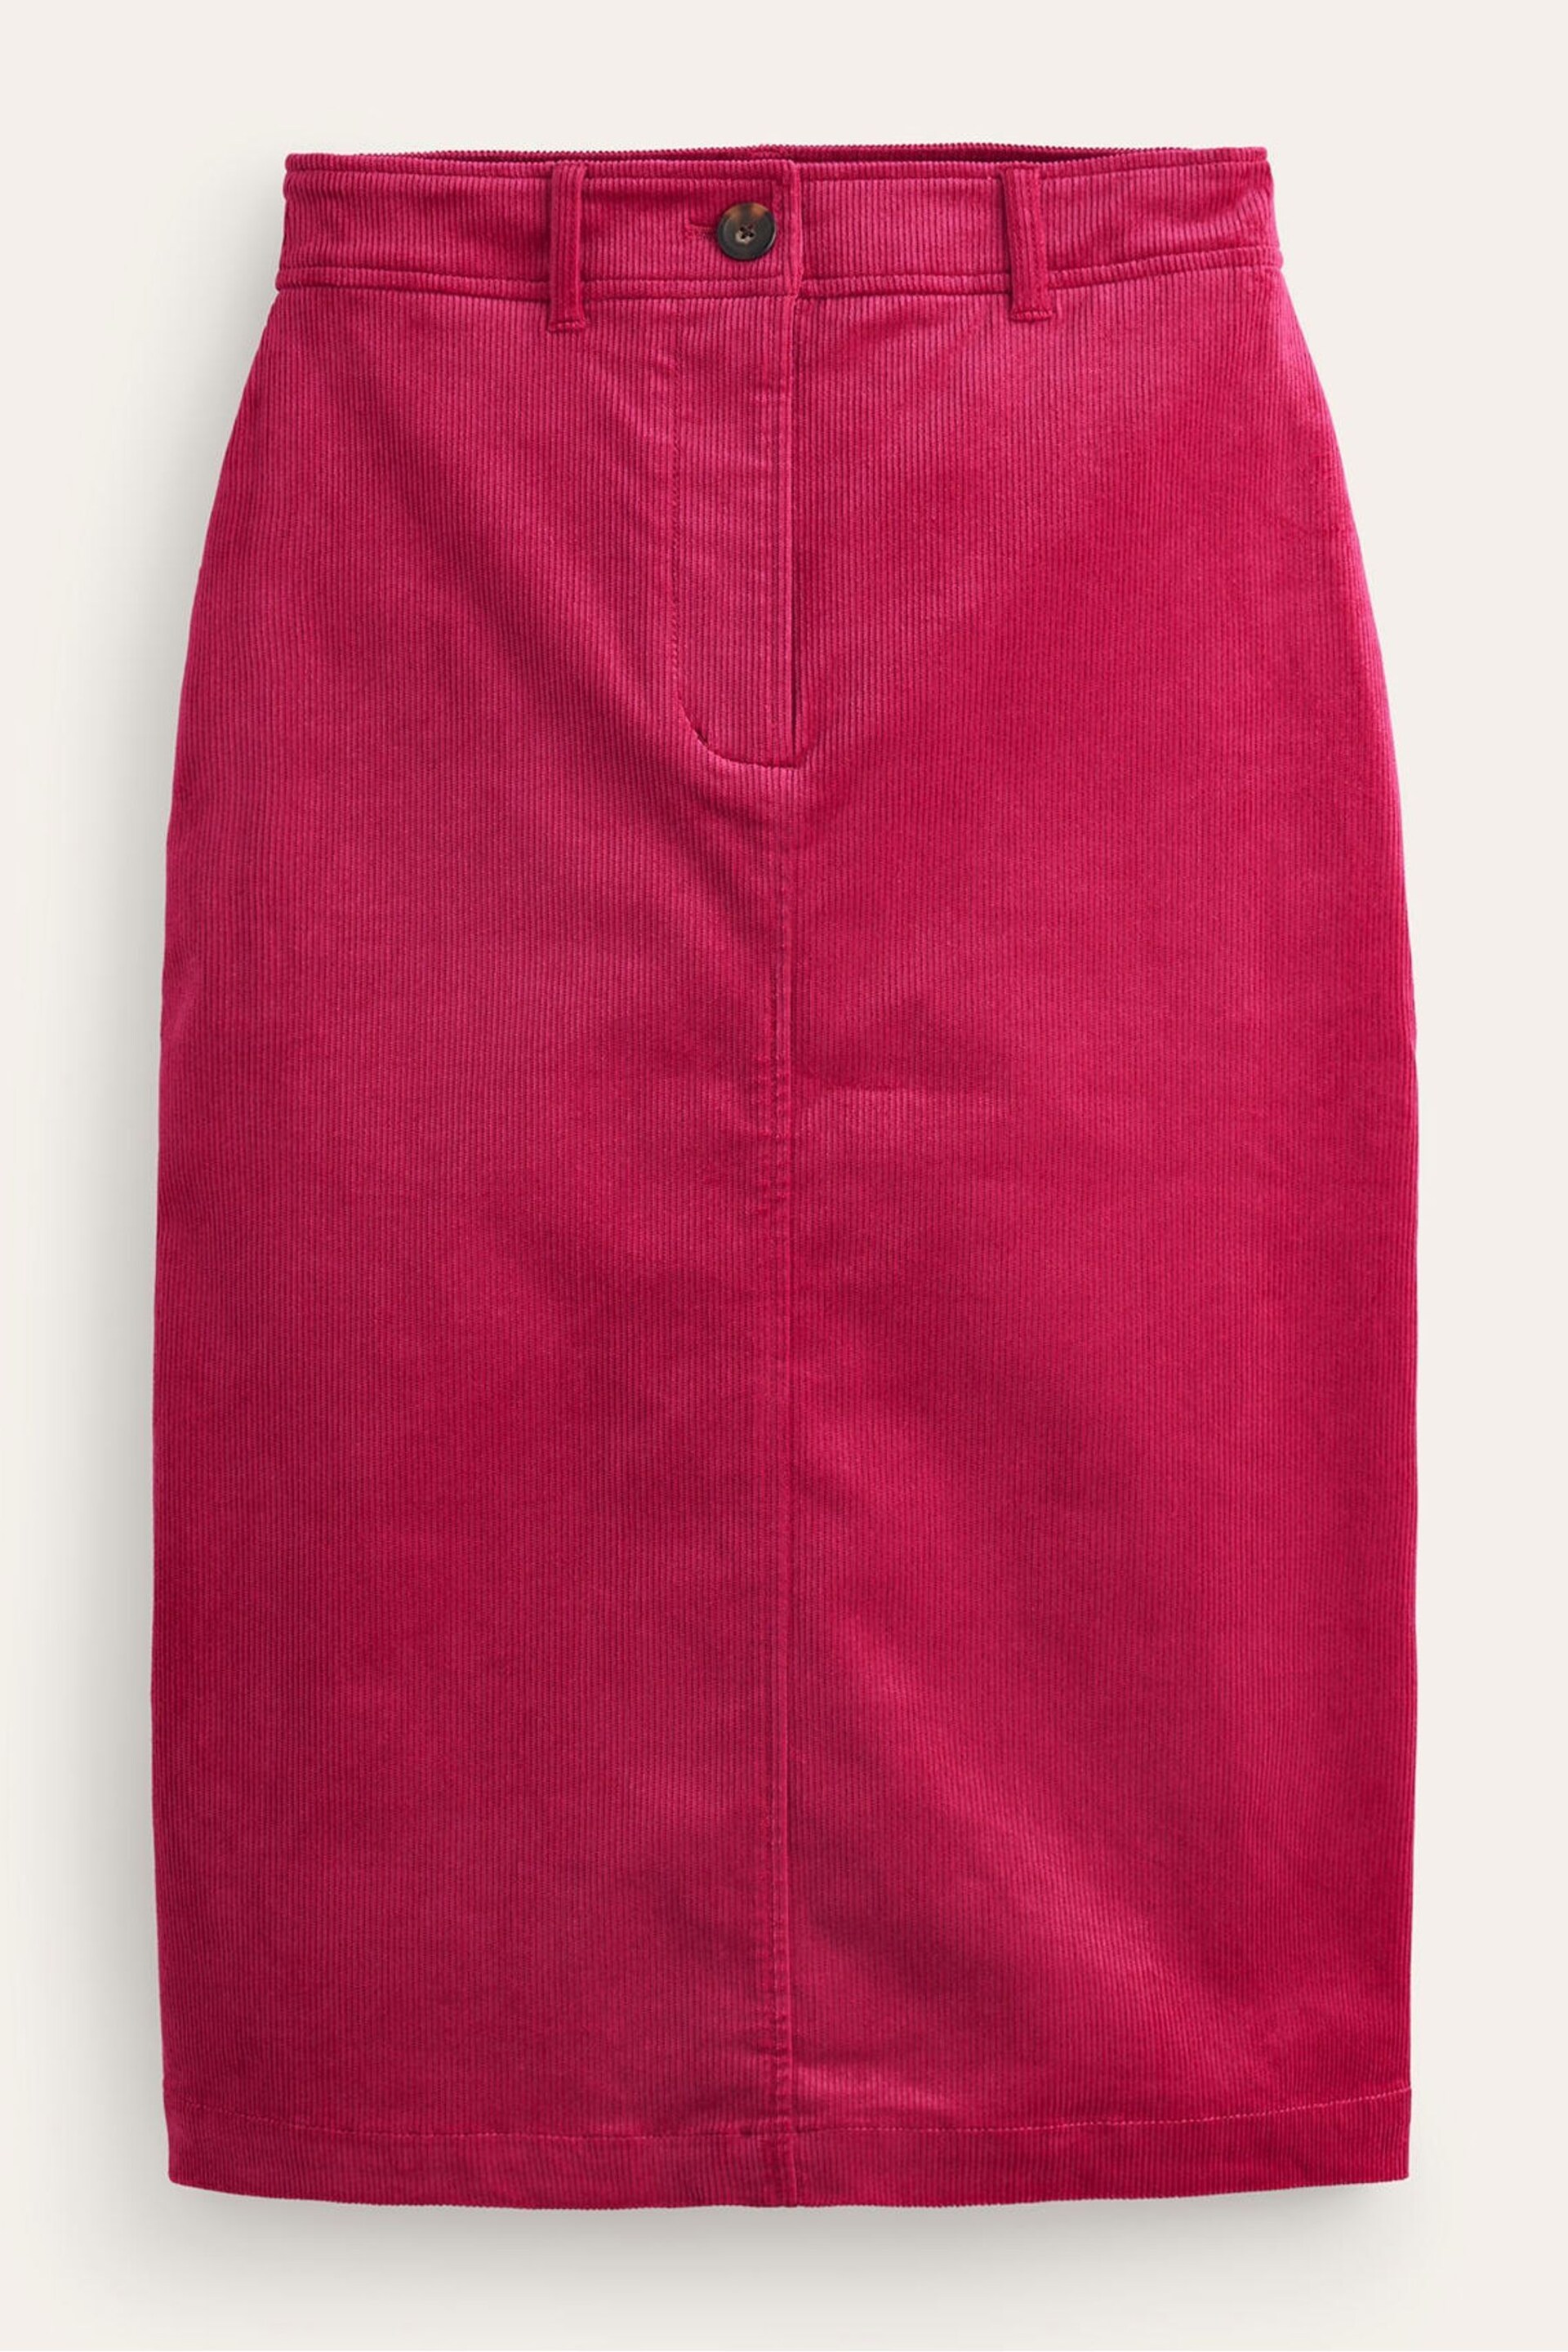 Boden Red Margot Cord Midi Skirt - Image 6 of 6